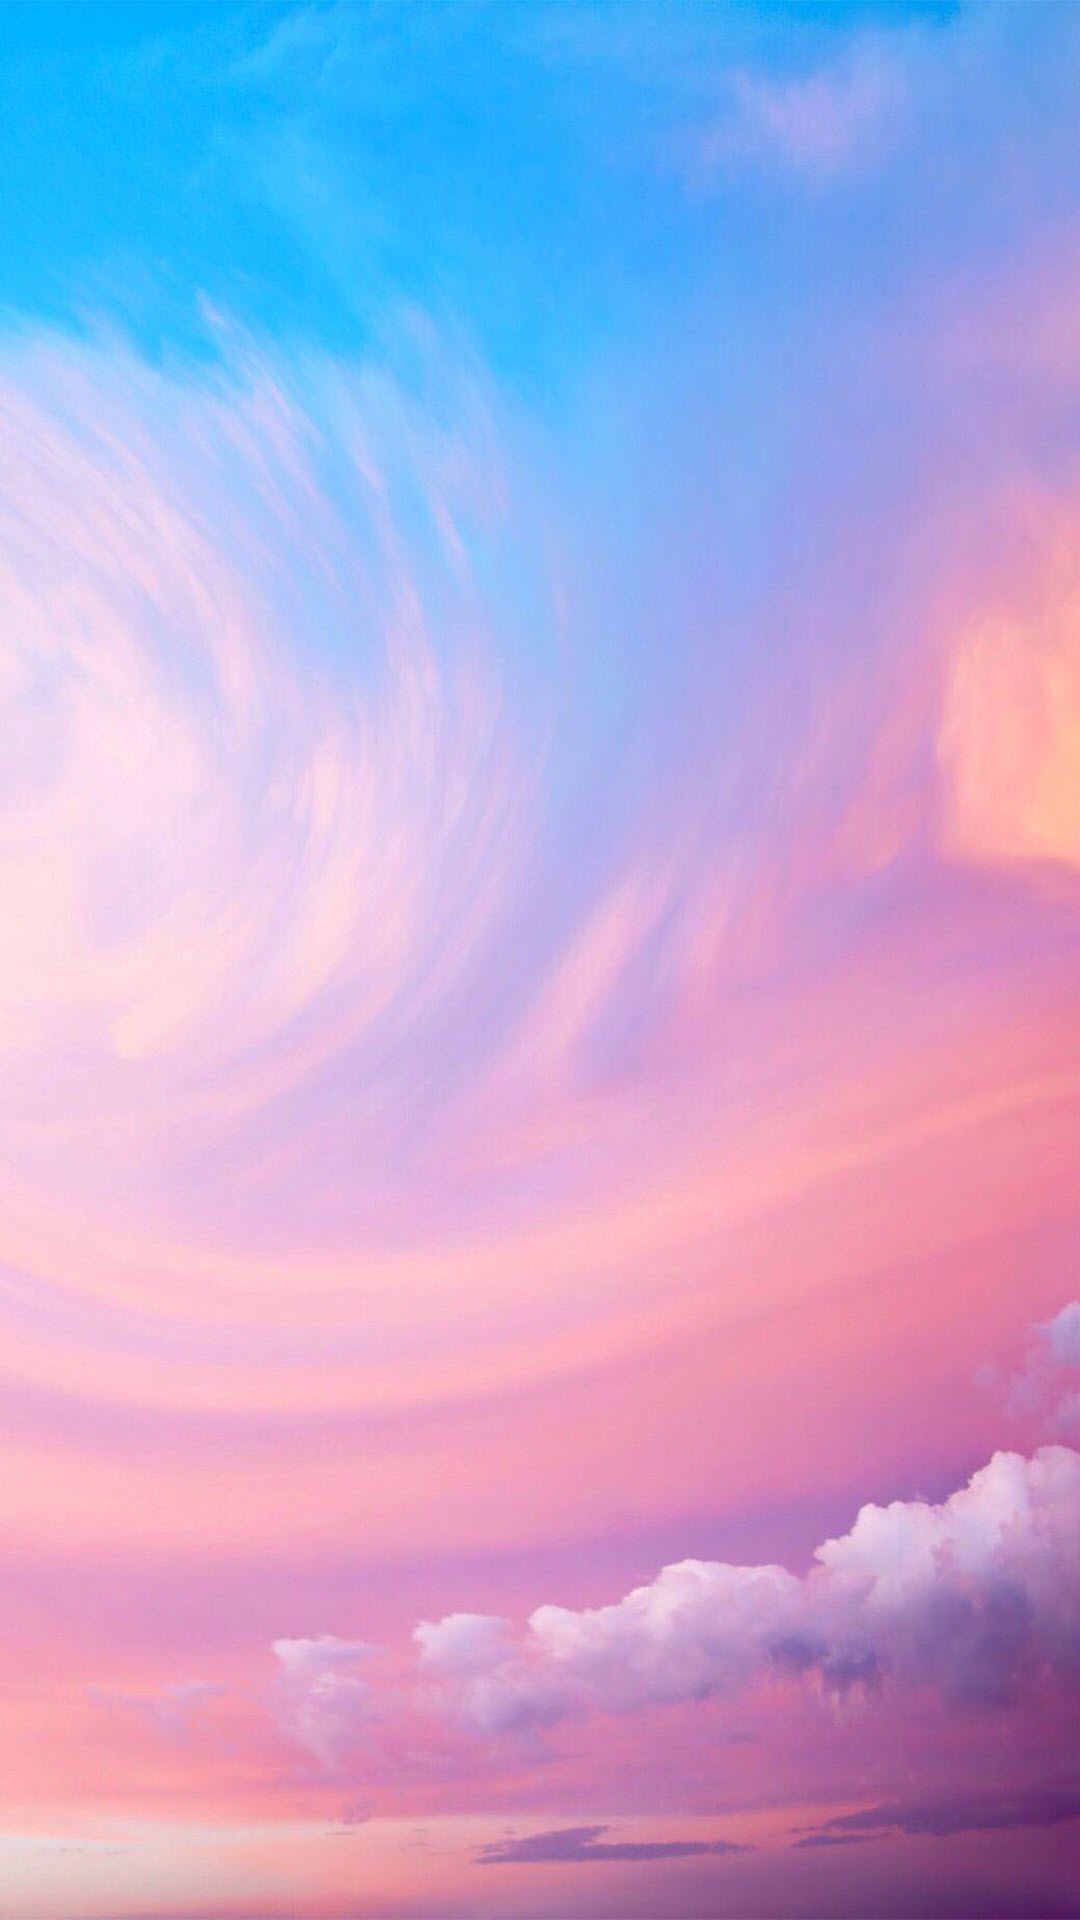 Bạn đang muốn tìm kiếm những ảnh đẹp free về bầu trời màu hồng để làm ảnh nền cho màn hình thiết bị của mình? Hãy đến ngay với bộ sưu tập ảnh đầy sắc màu và cảm hứng này, đây chắc chắn sẽ là một lựa chọn tuyệt vời cho bạn.